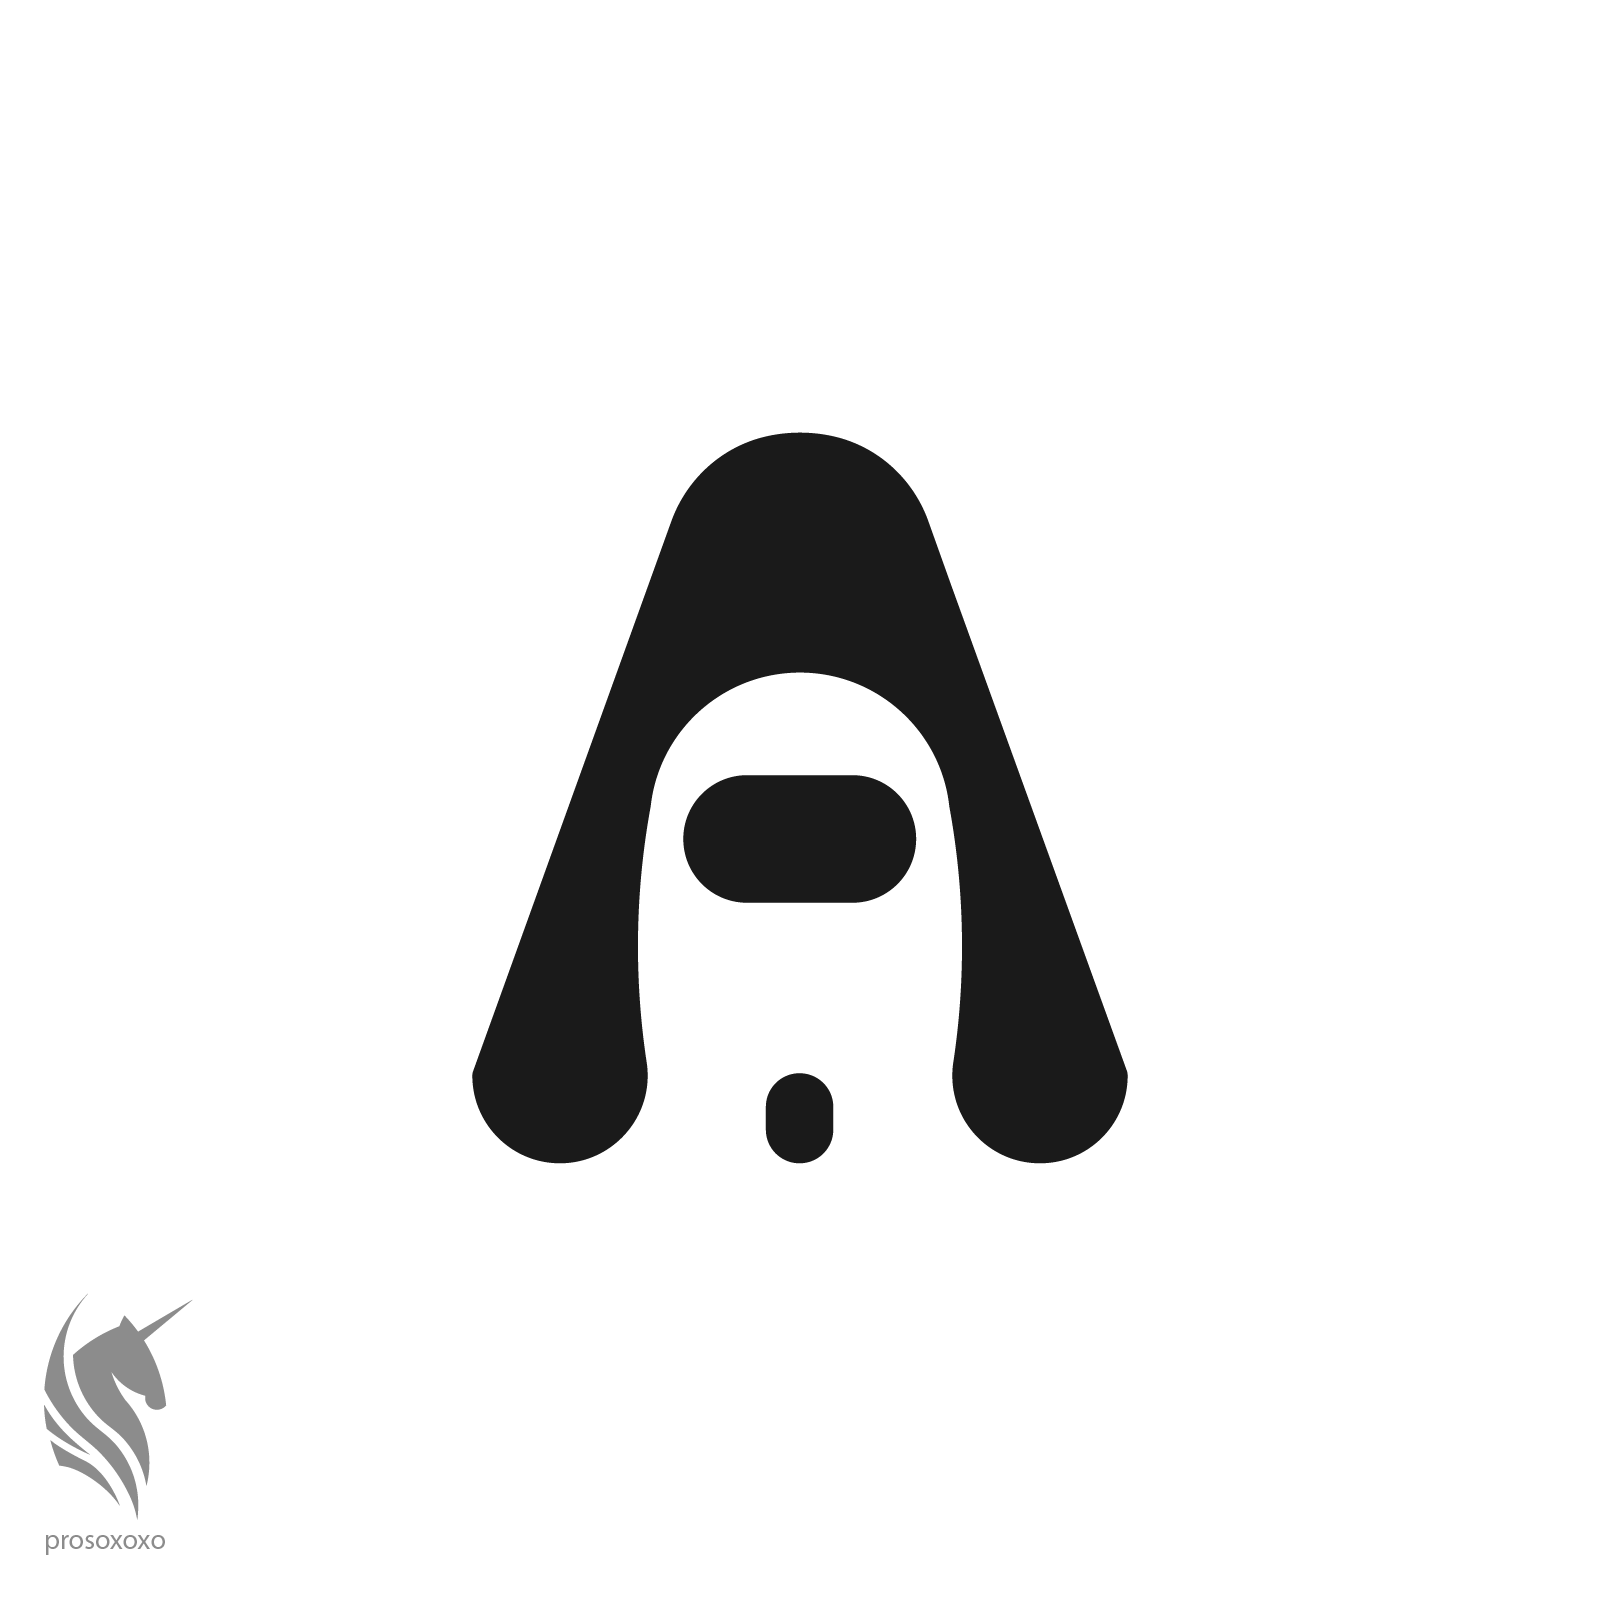 Among Us Logo - Among Us logo concept. : r/logodesign